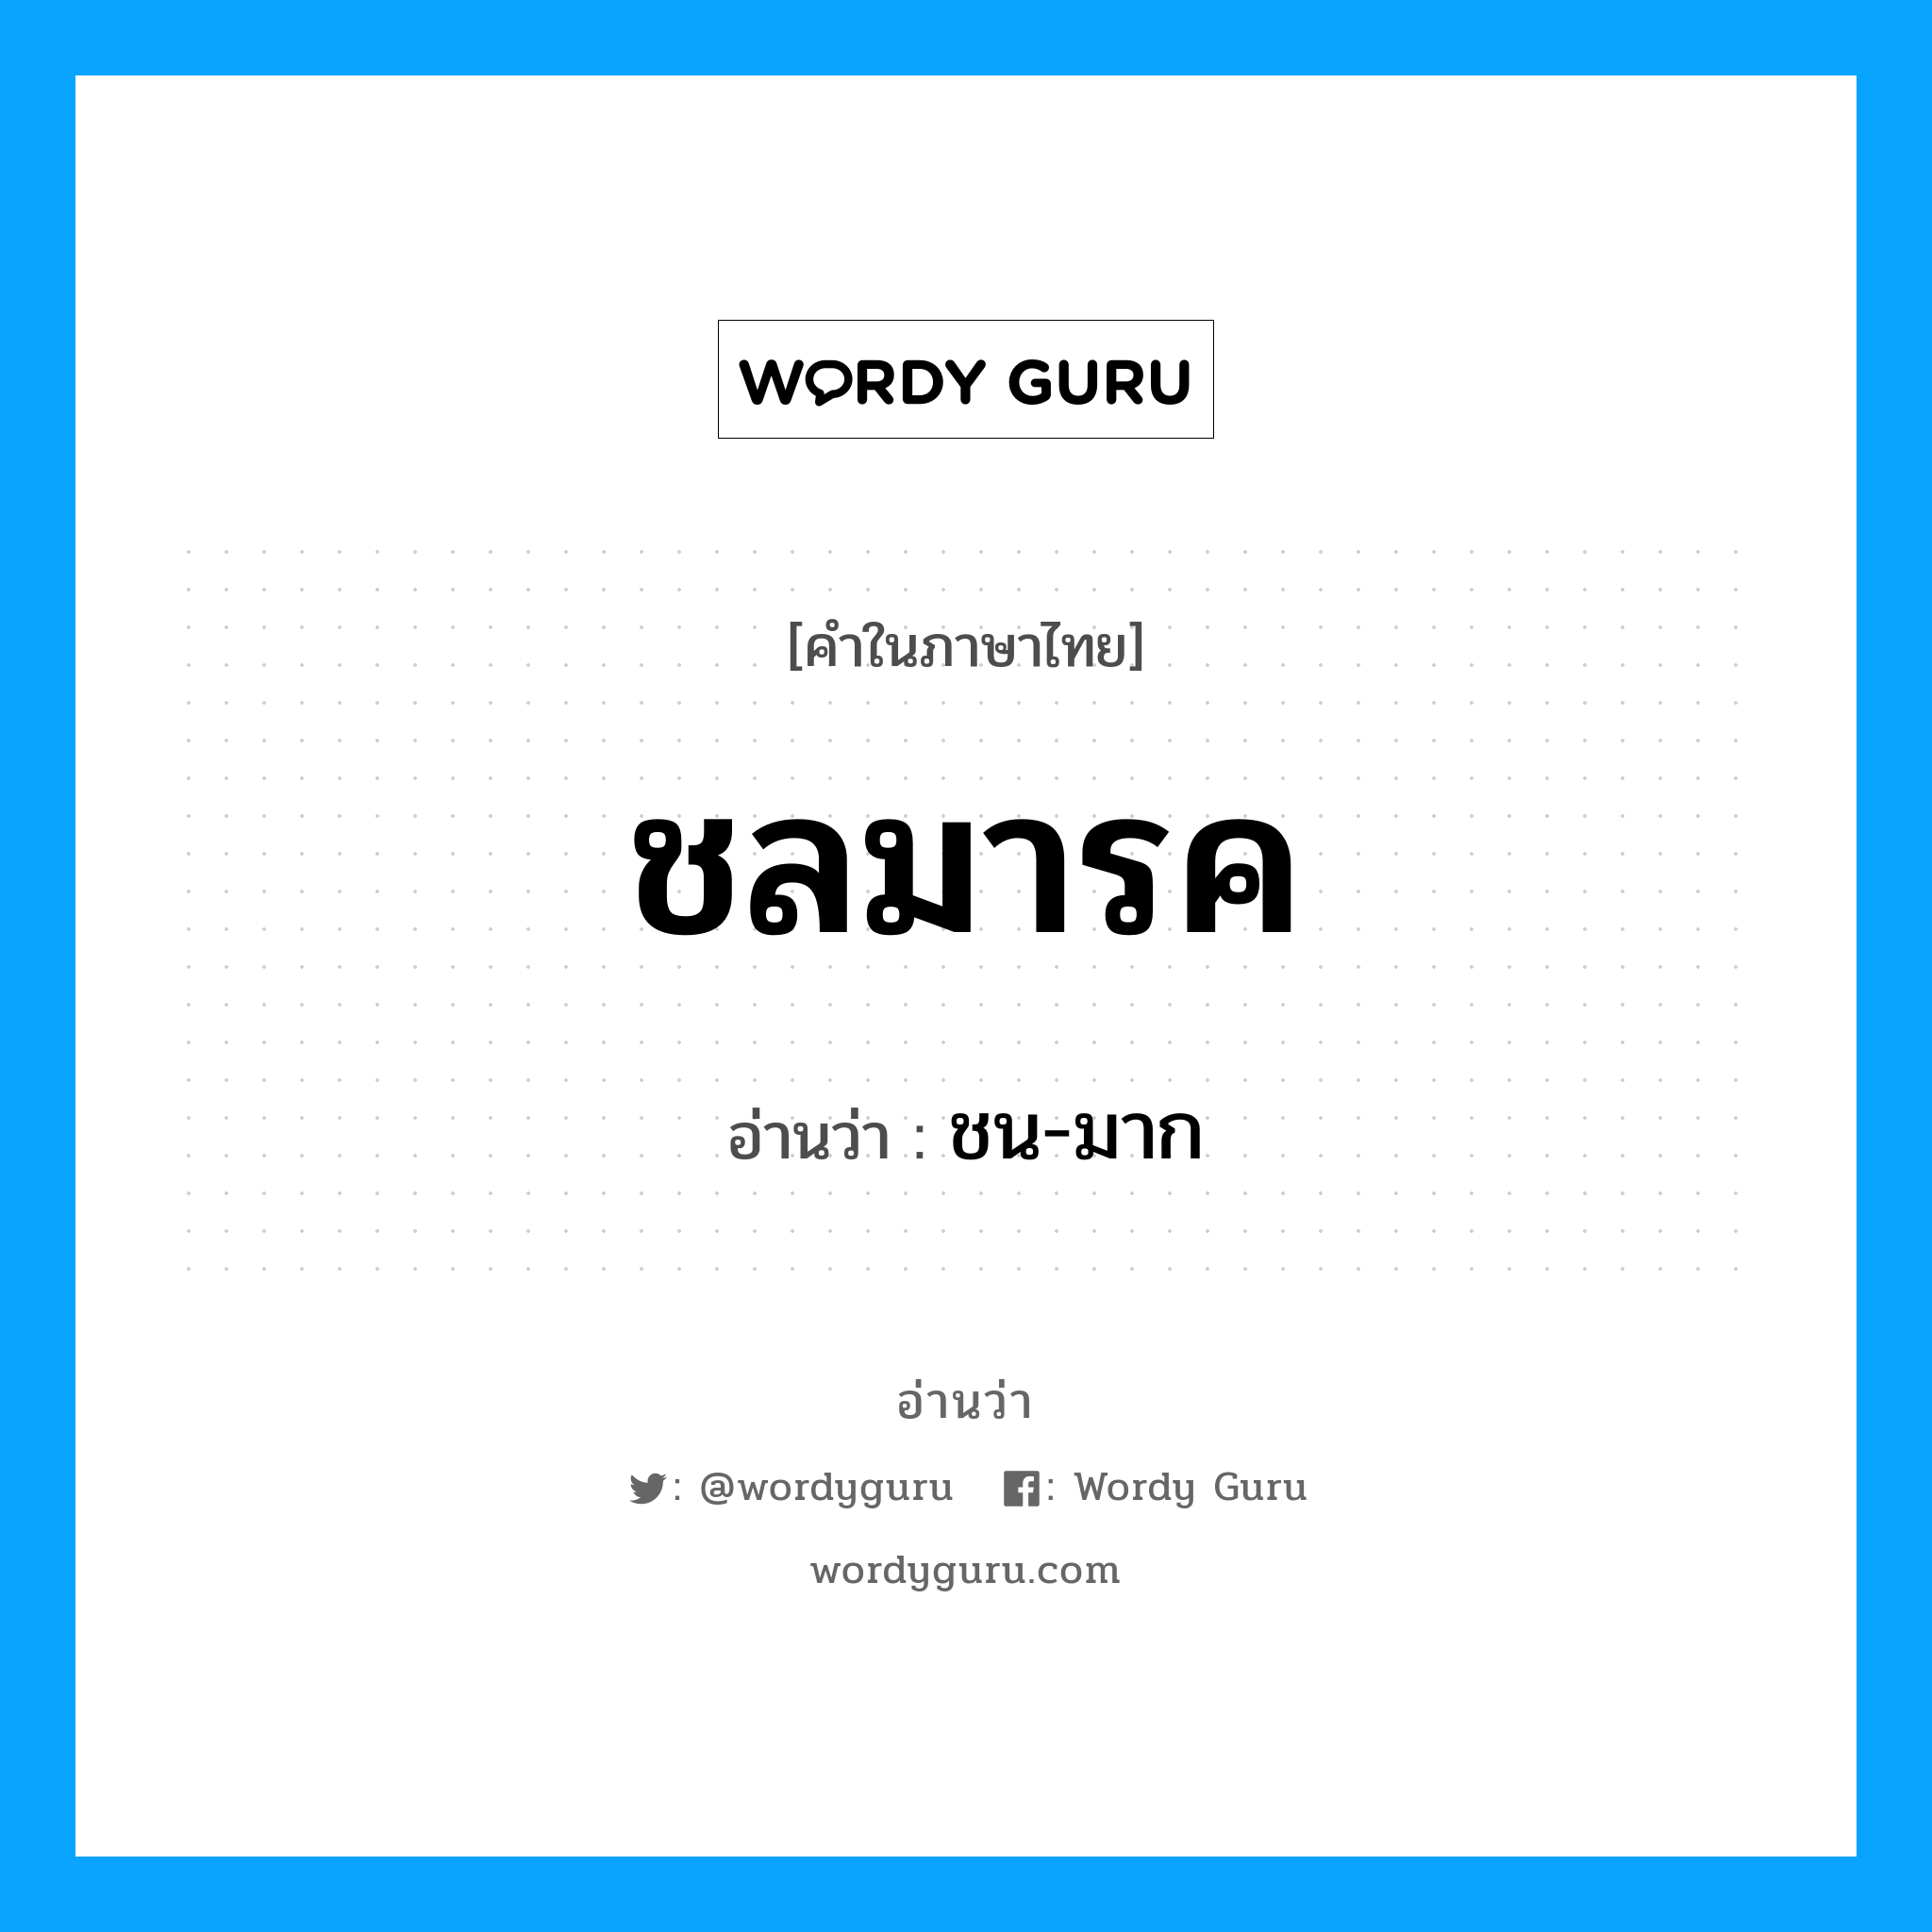 ชน-มาก เป็นคำอ่านของคำไหน?, คำในภาษาไทย ชน-มาก อ่านว่า ชลมารค